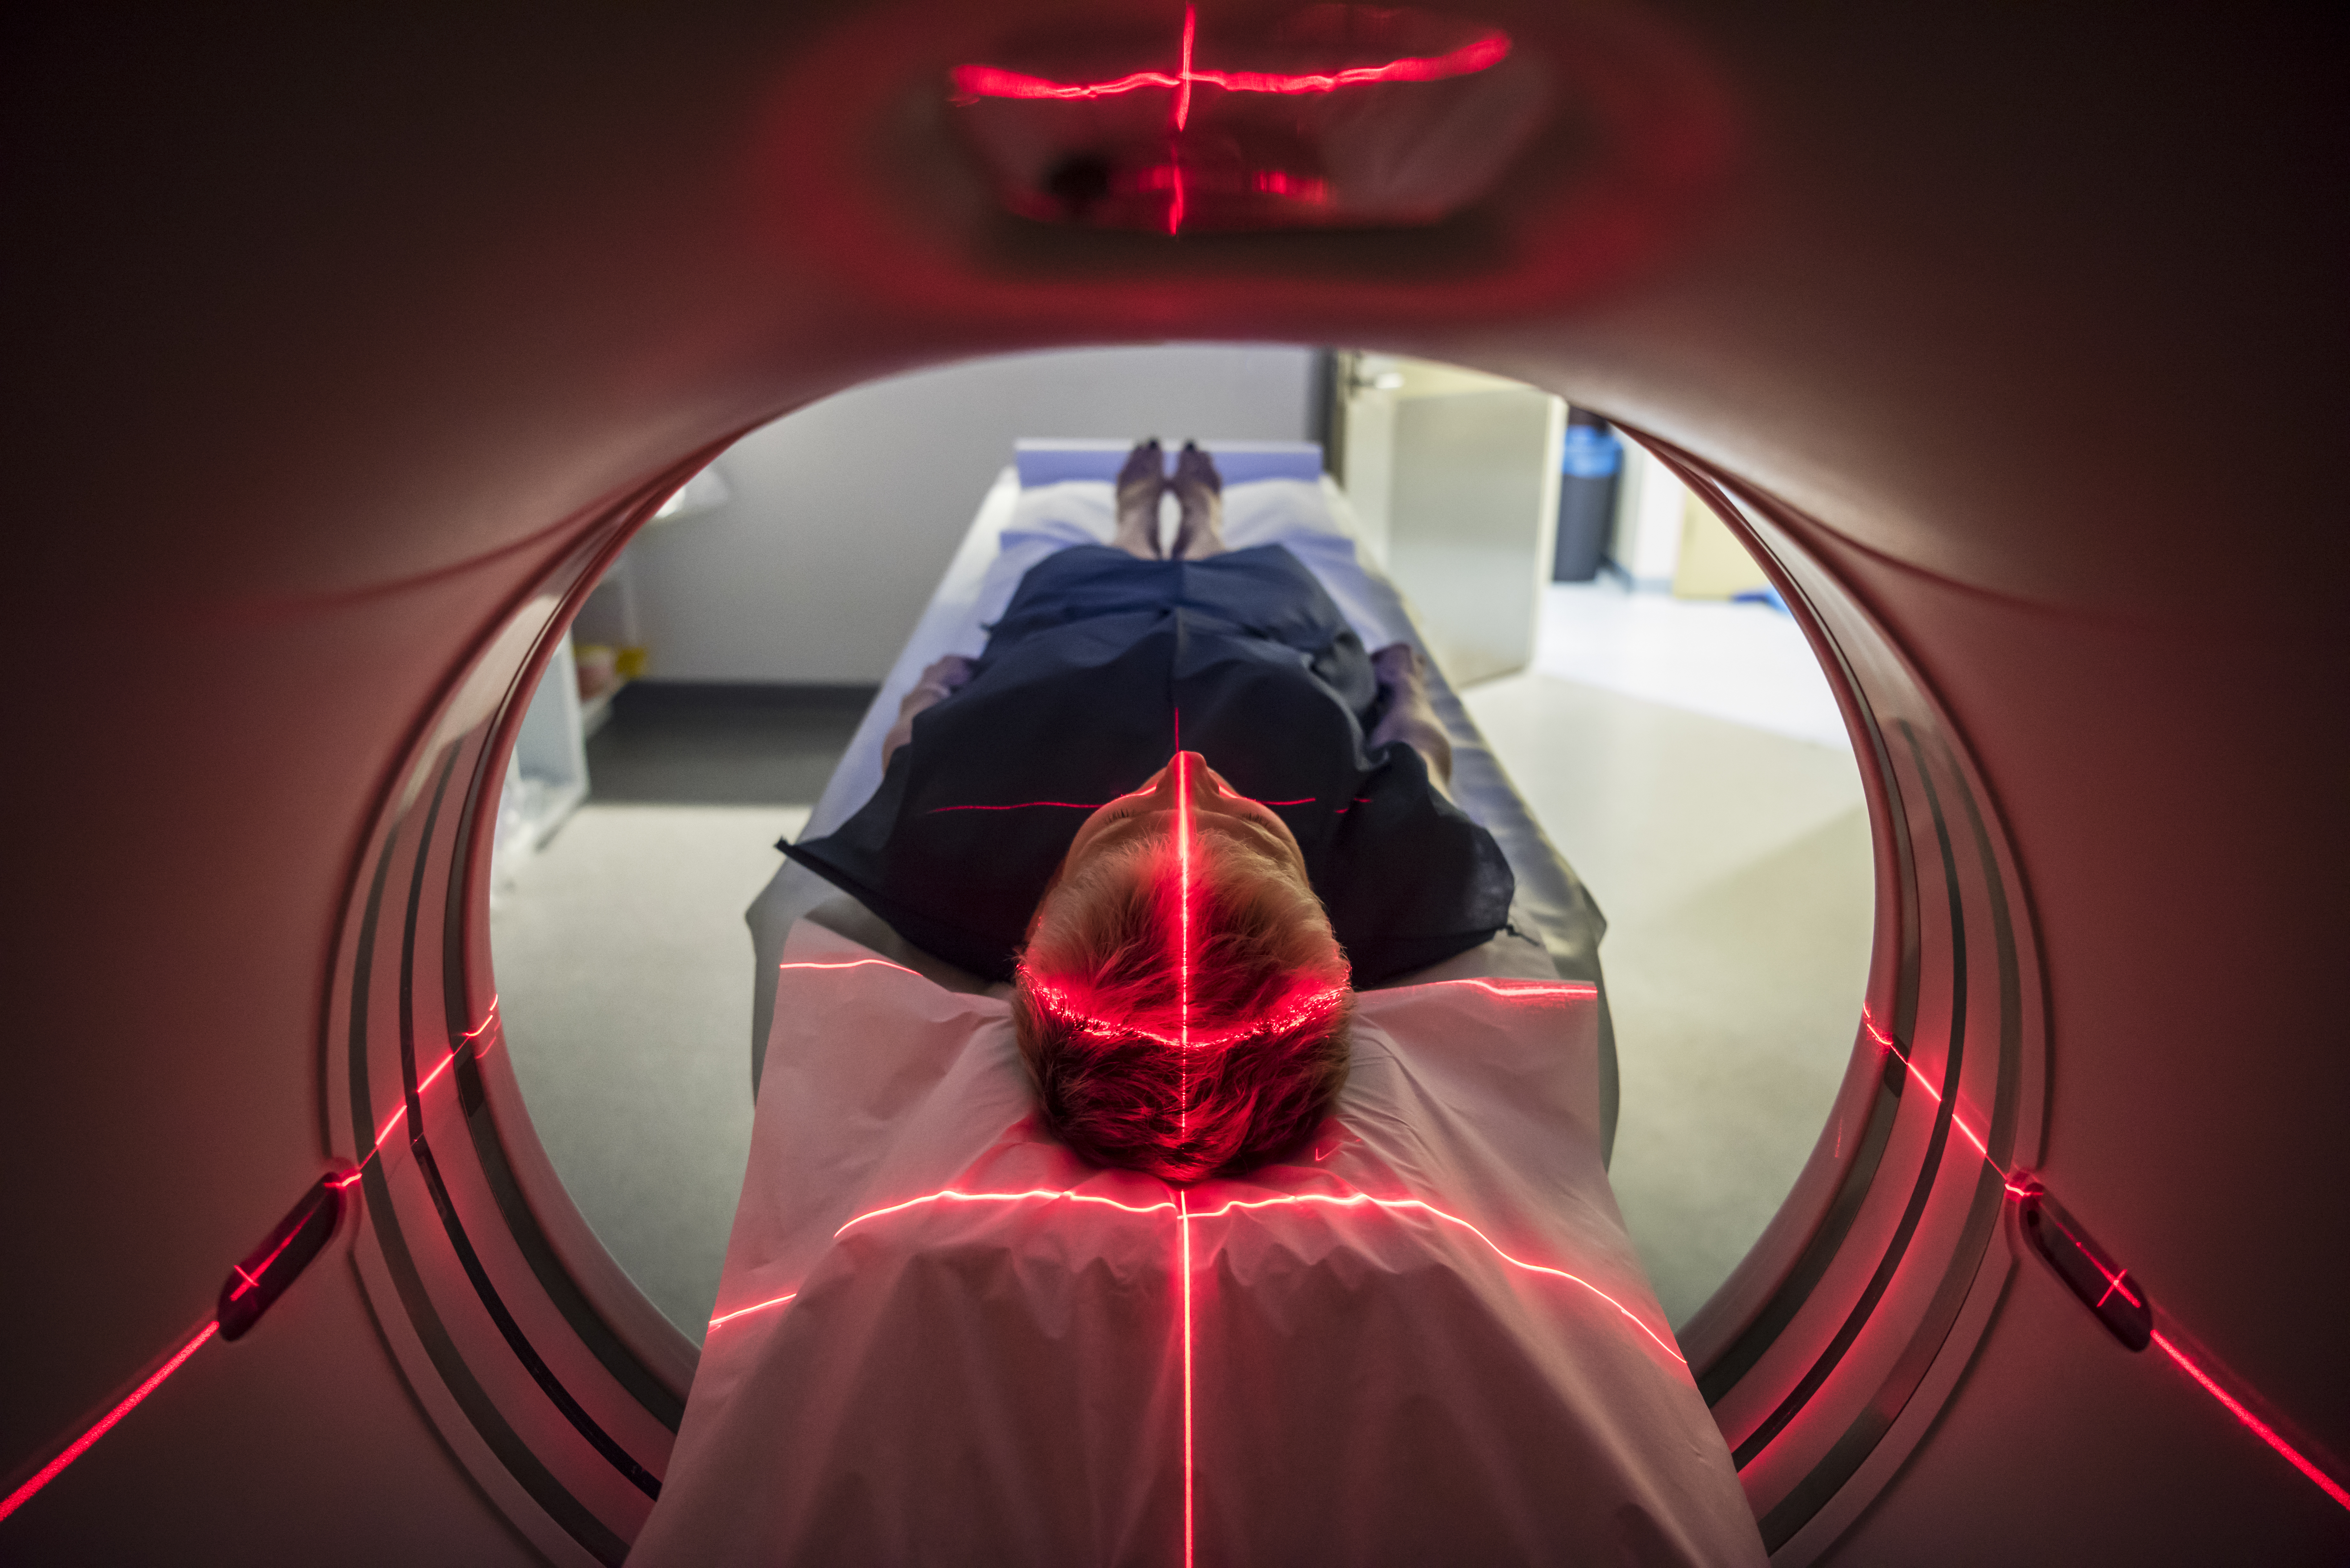 MRI machine scanning patient